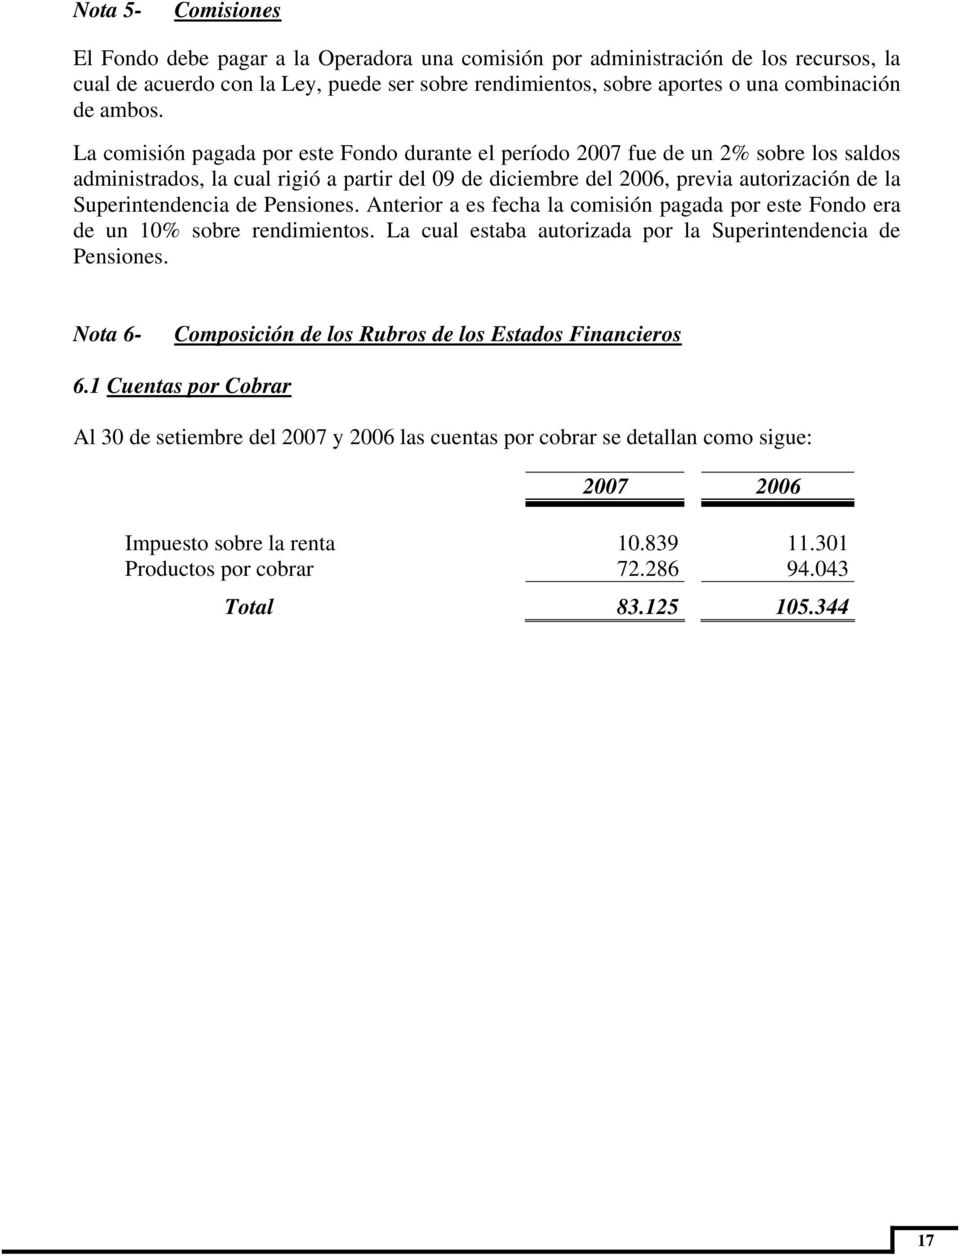 La comisión pagada por este Fondo durante el período 2007 fue de un 2% sobre los saldos administrados, la cual rigió a partir del 09 de diciembre del 2006, previa autorización de la Superintendencia